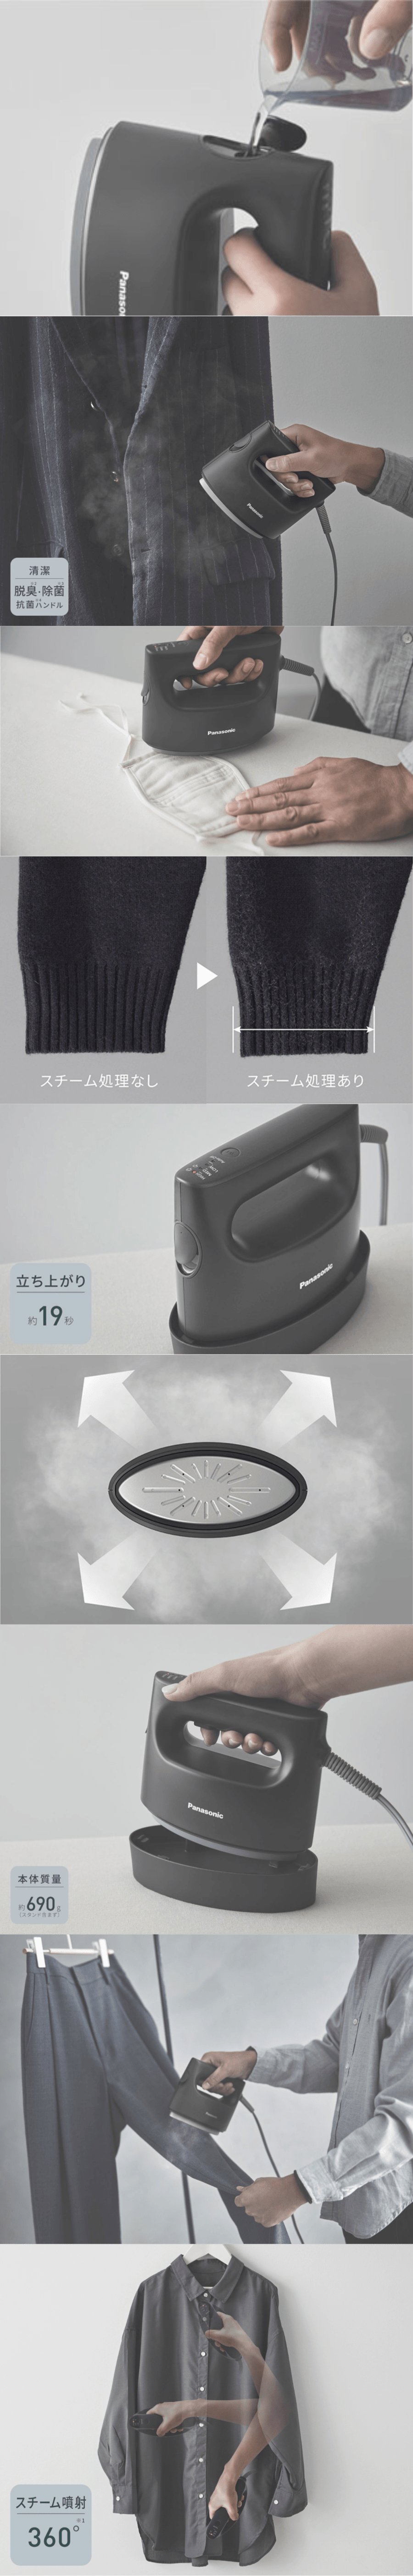 【新品】日本100V電器 日版松下蒸氣掛燙機NI-FS790-C 黑色 【加拿大直郵】